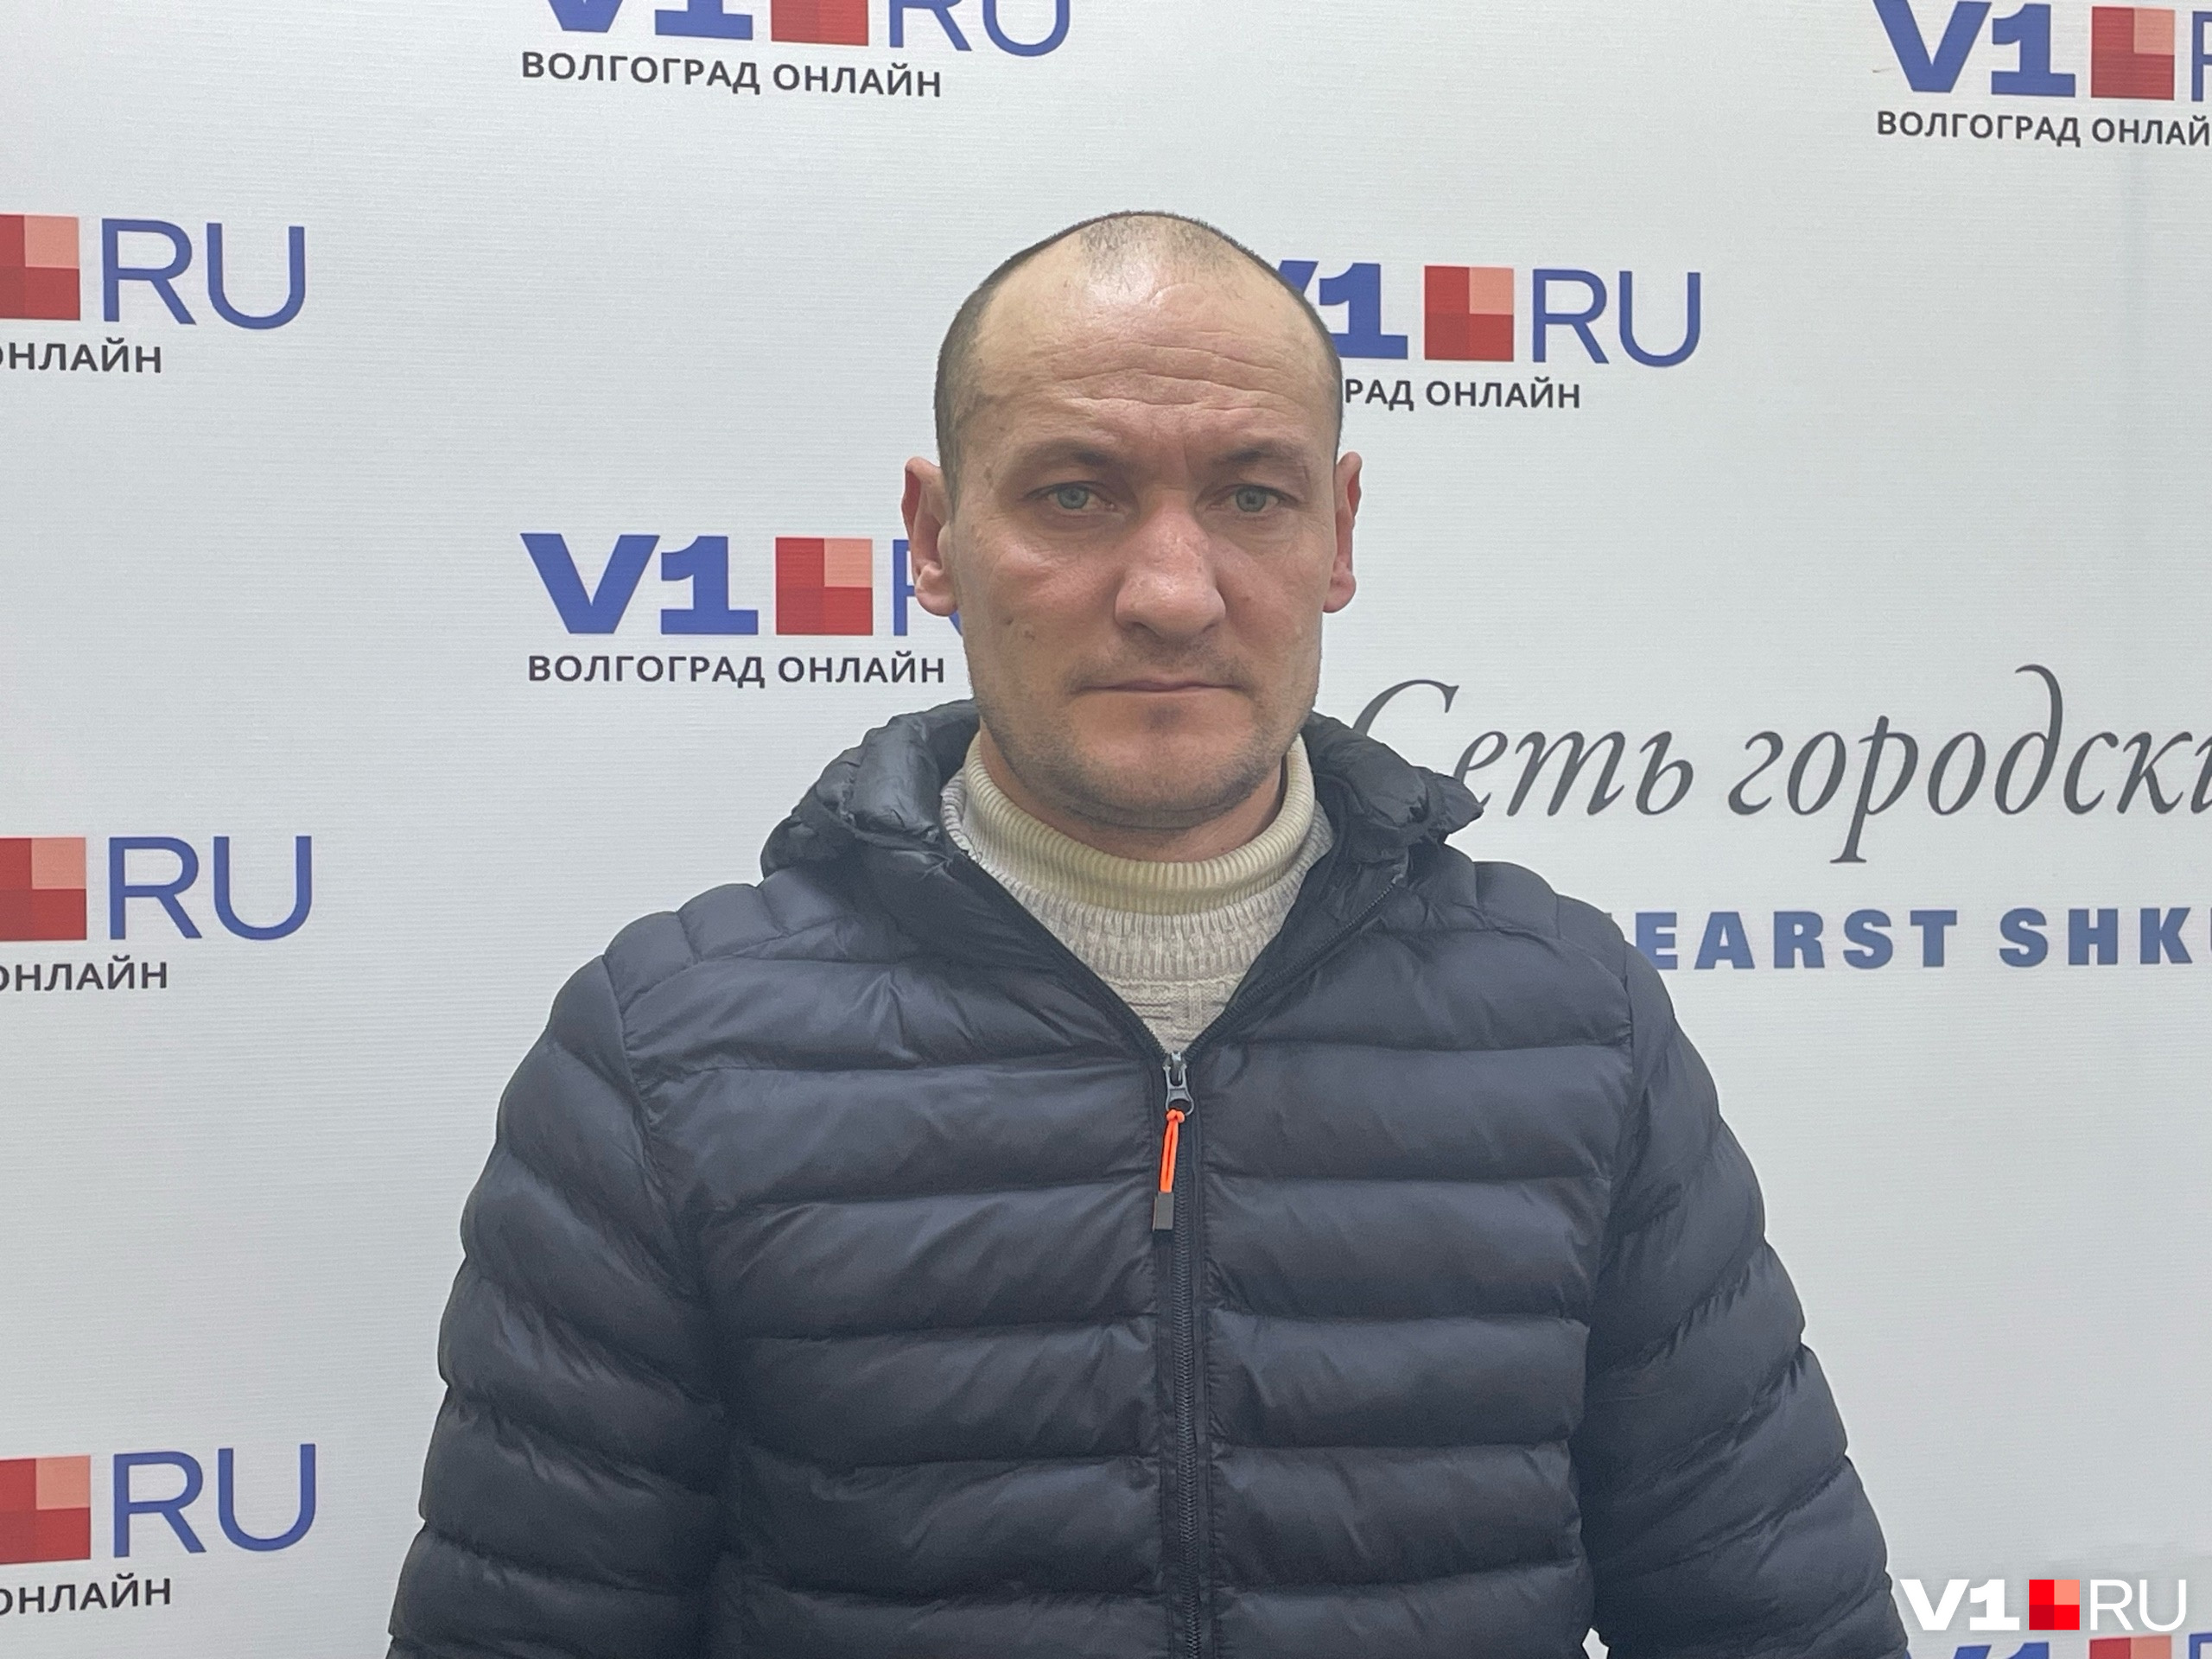 Сергей Материкин уверяет, что без паспорта не может ни отстаивать свои интересы в суде, ни зажить полноценной гражданской жизнью как до попадания в армию